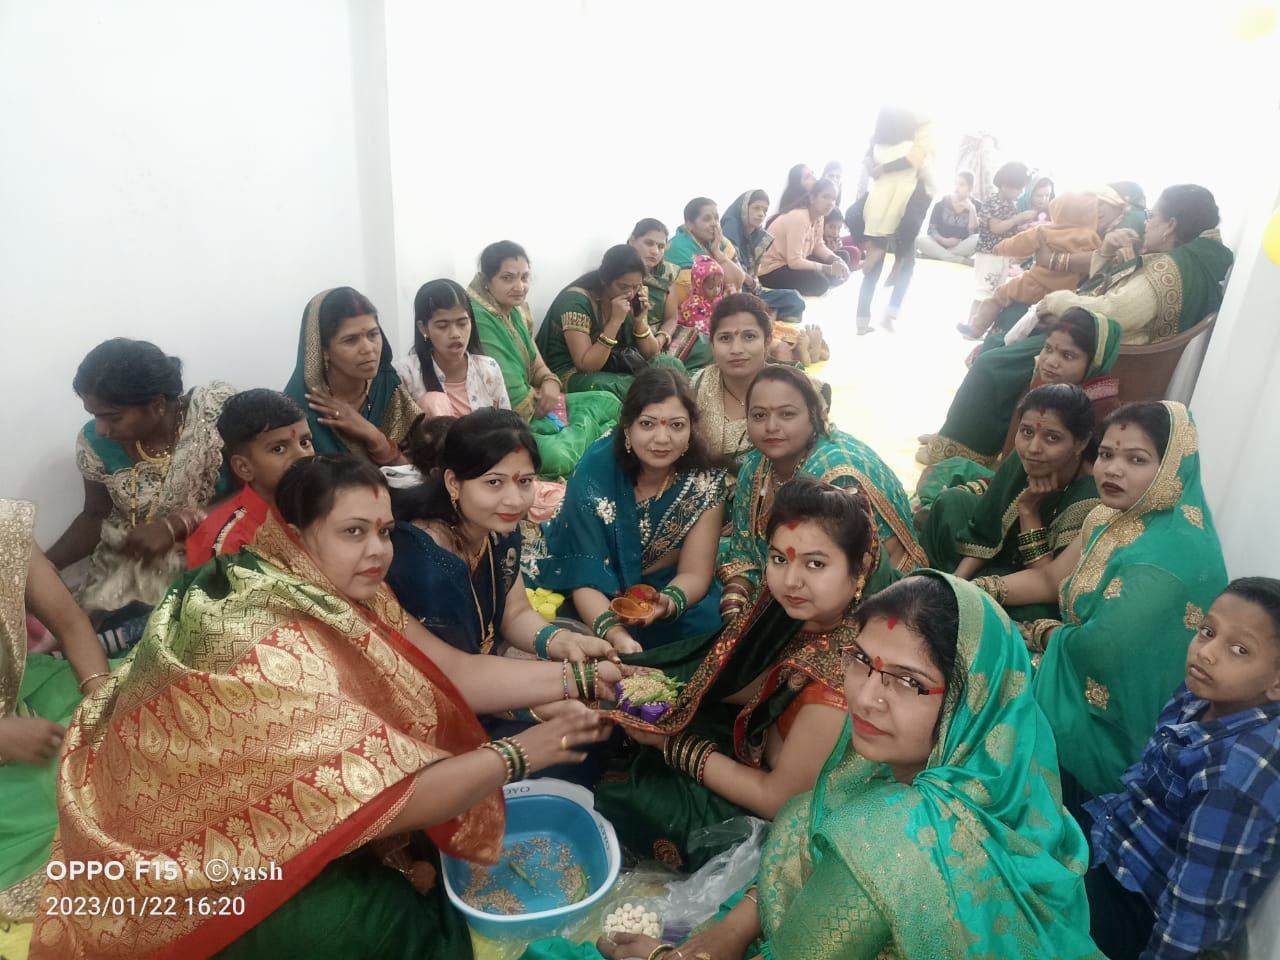 Betul Samachar : स्वर्णकार मालवीय समाज की महिलाओं का हल्दी कुमकुम कार्यक्रम आयोजित, वान भेंट कर की सुख समृद्धि की कामना